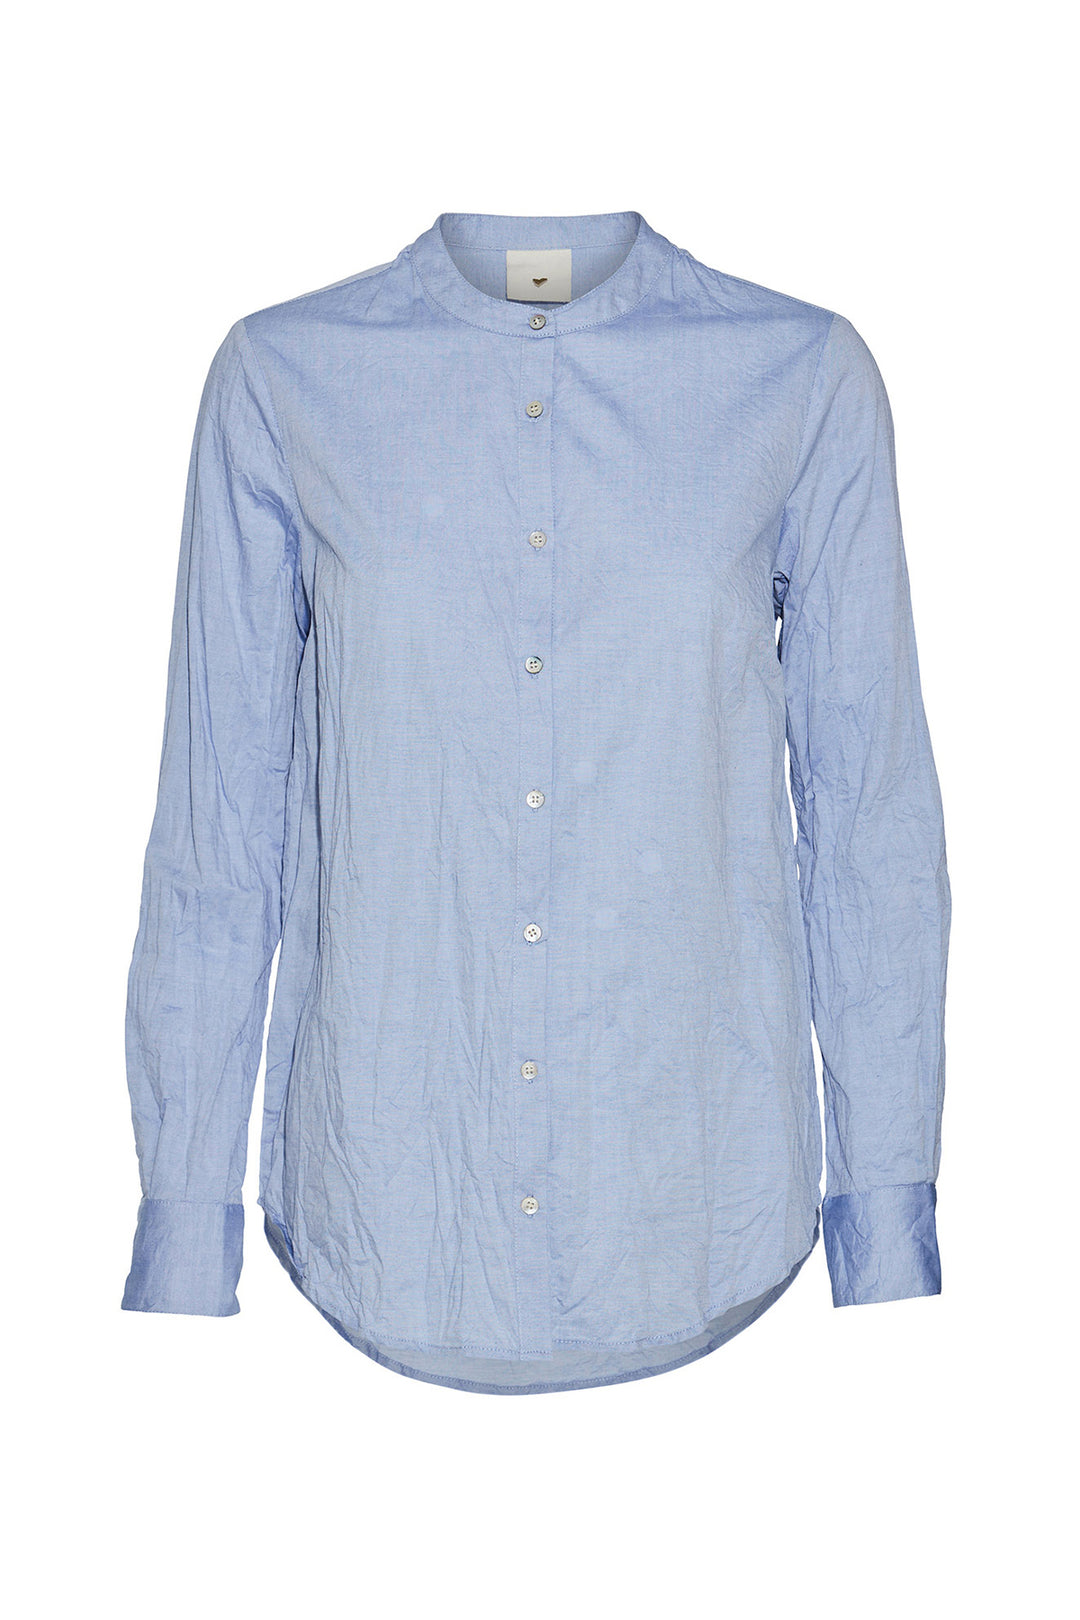 Heartmade Maple shirt HM SHIRTS 21 Light blue